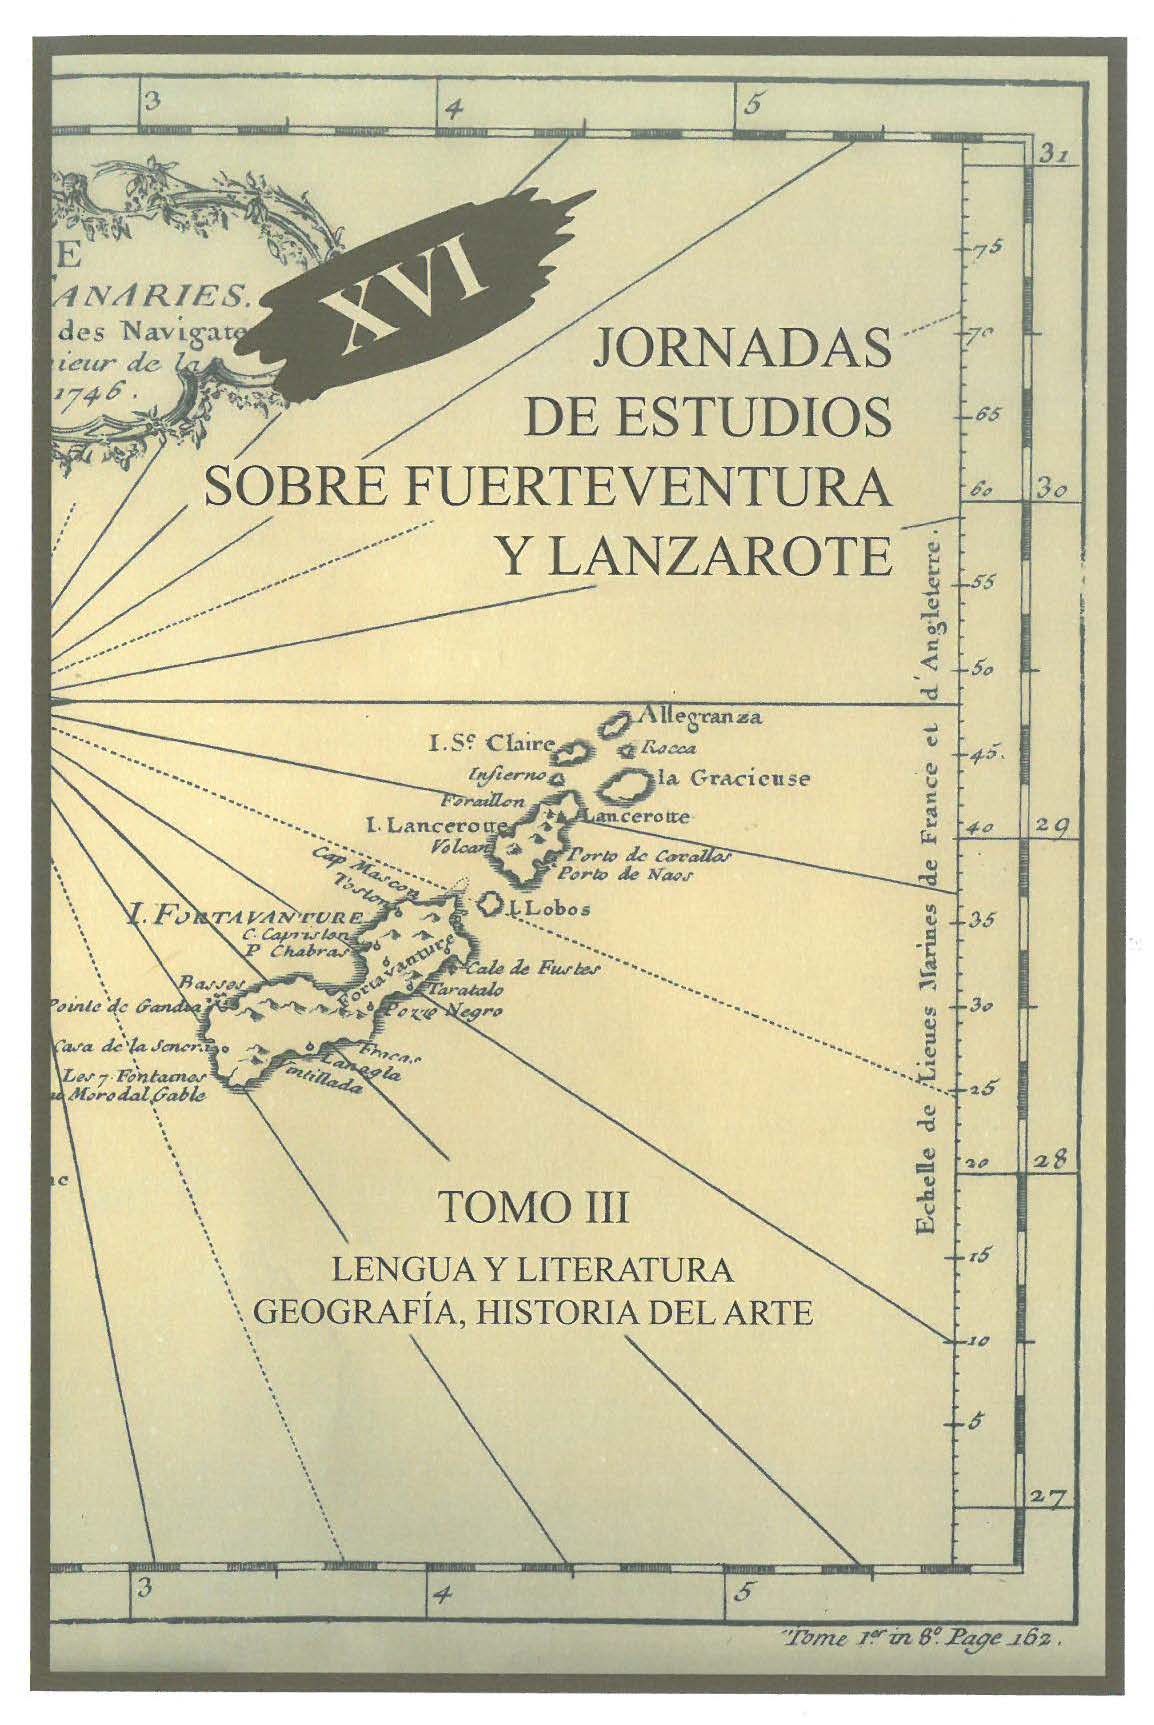 Fuerteventura y Lanzarote en Madeira